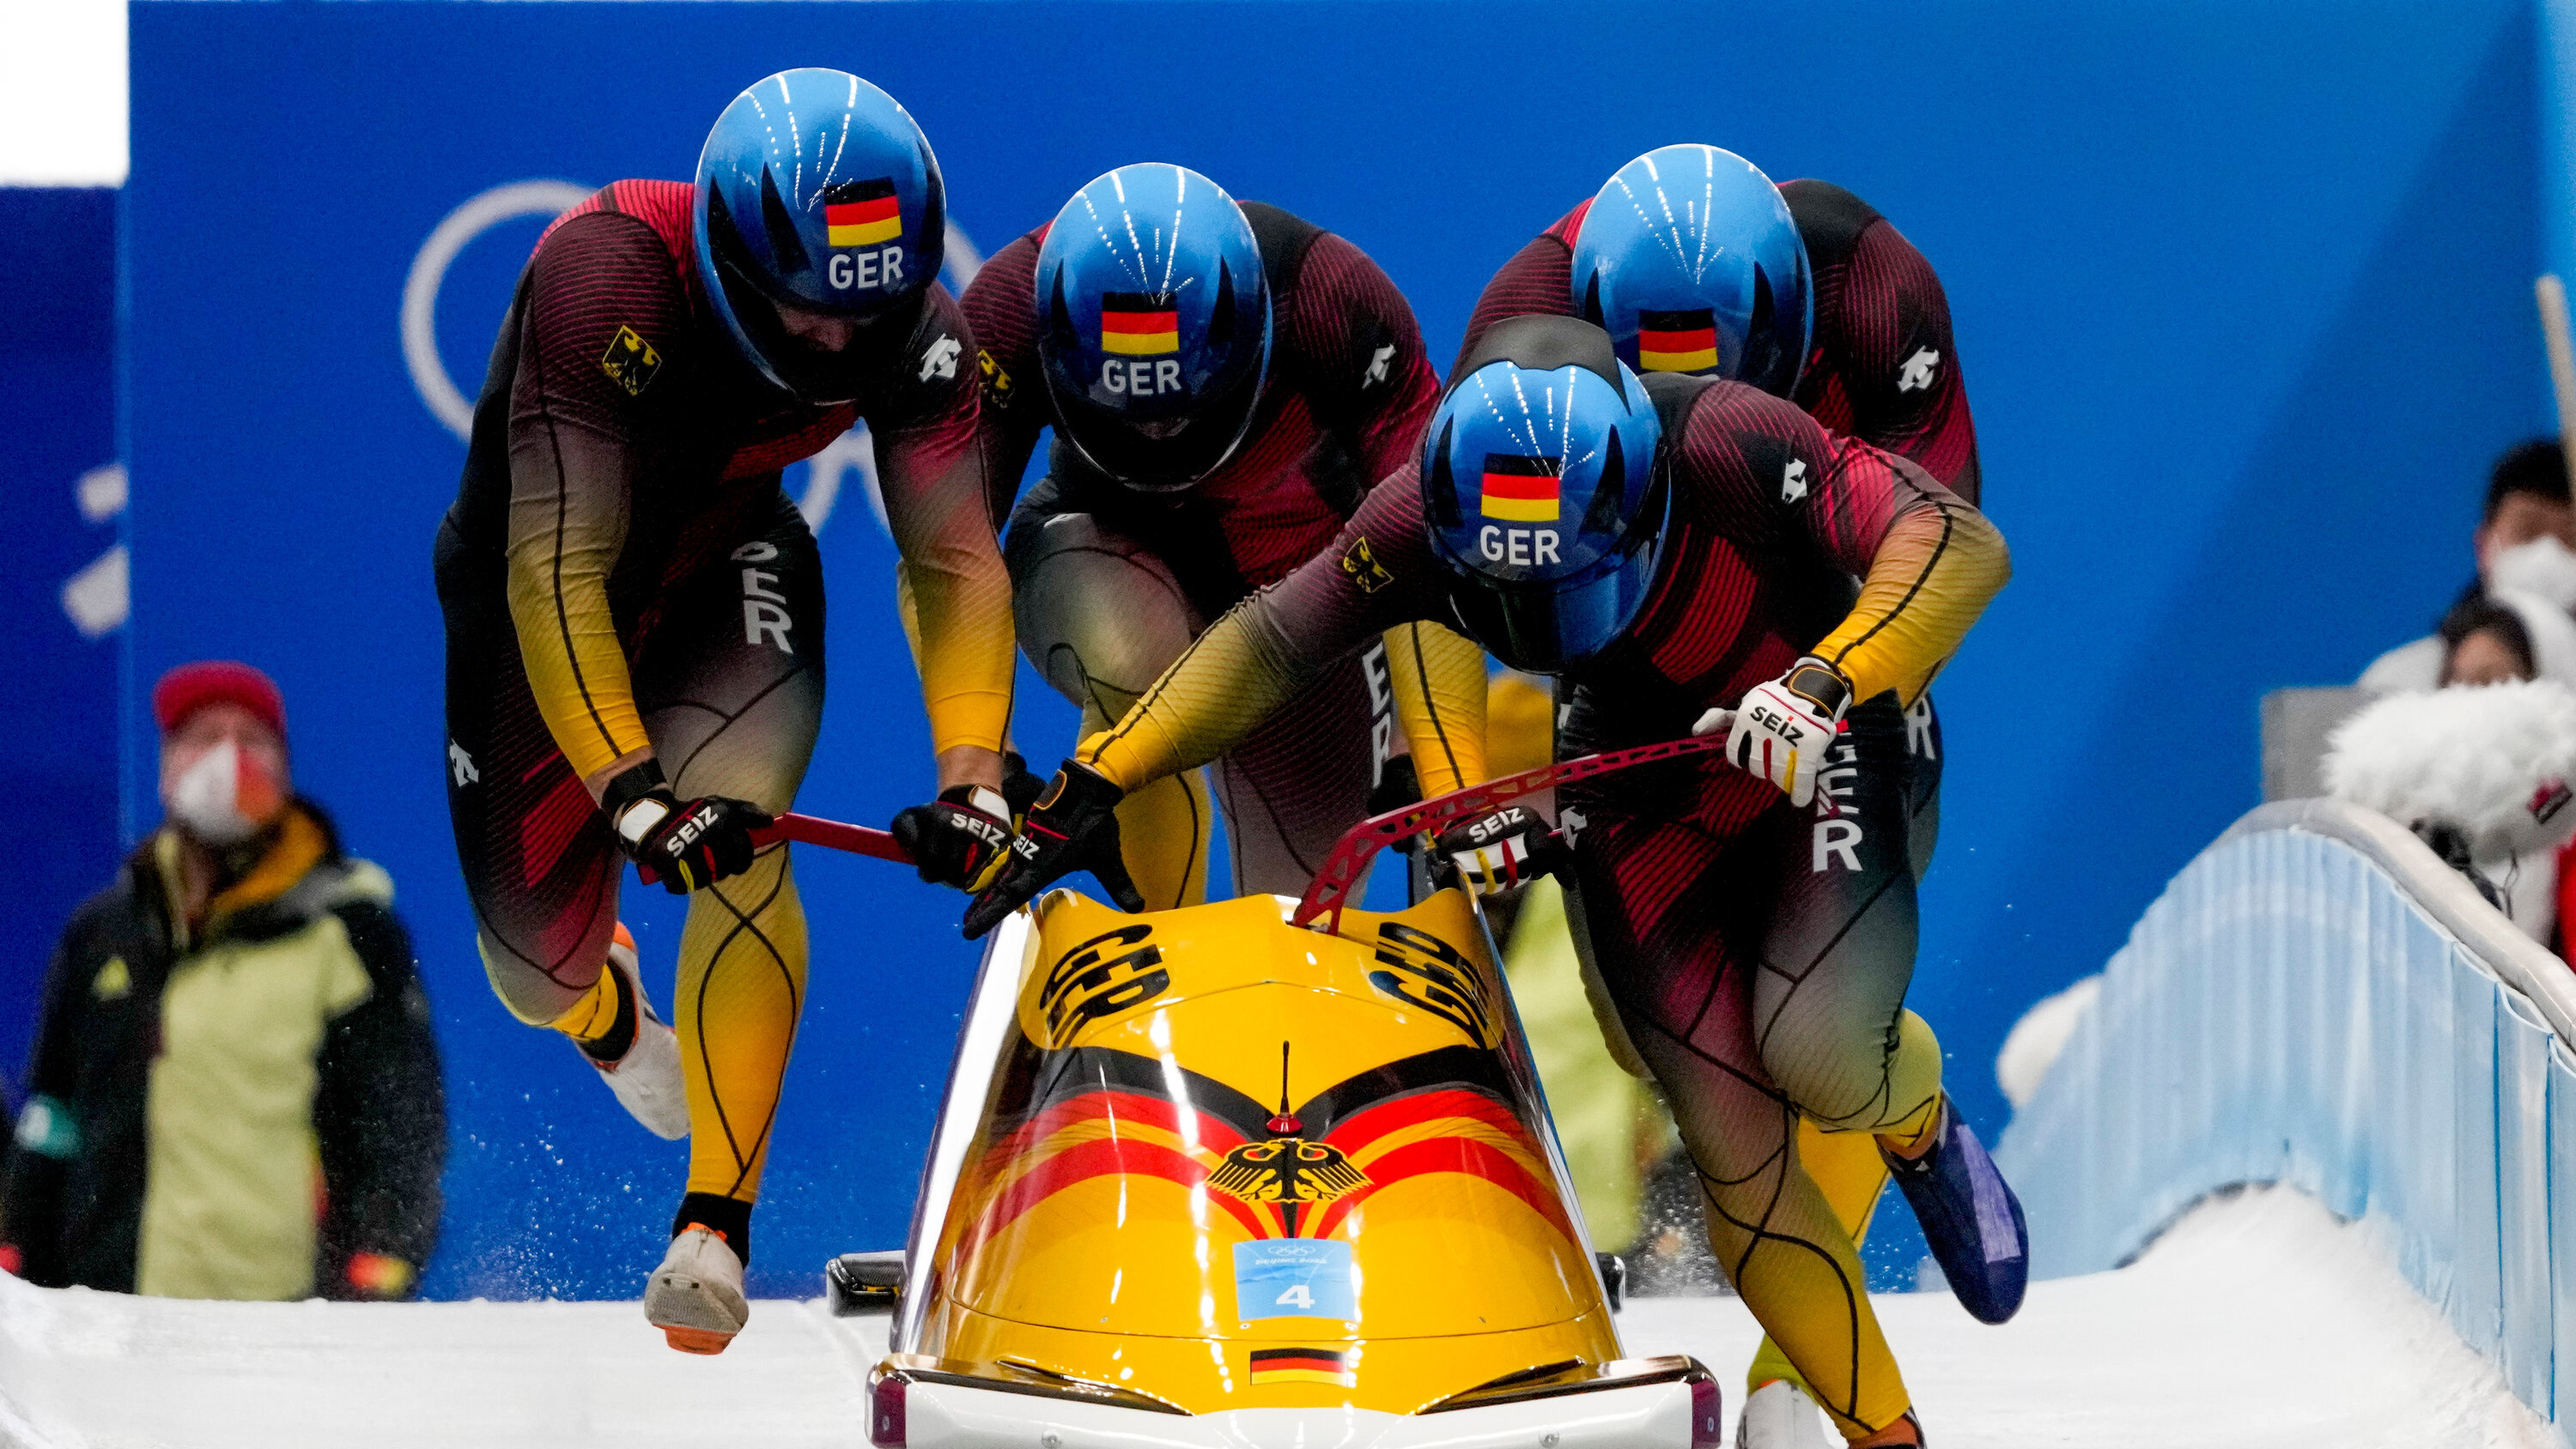 Bobsleigh: Francesco Friedrich, Thorsten Margis, Candy Bauer, Alexander Schueller, German Olympic team. 3000x1690 HD Wallpaper.